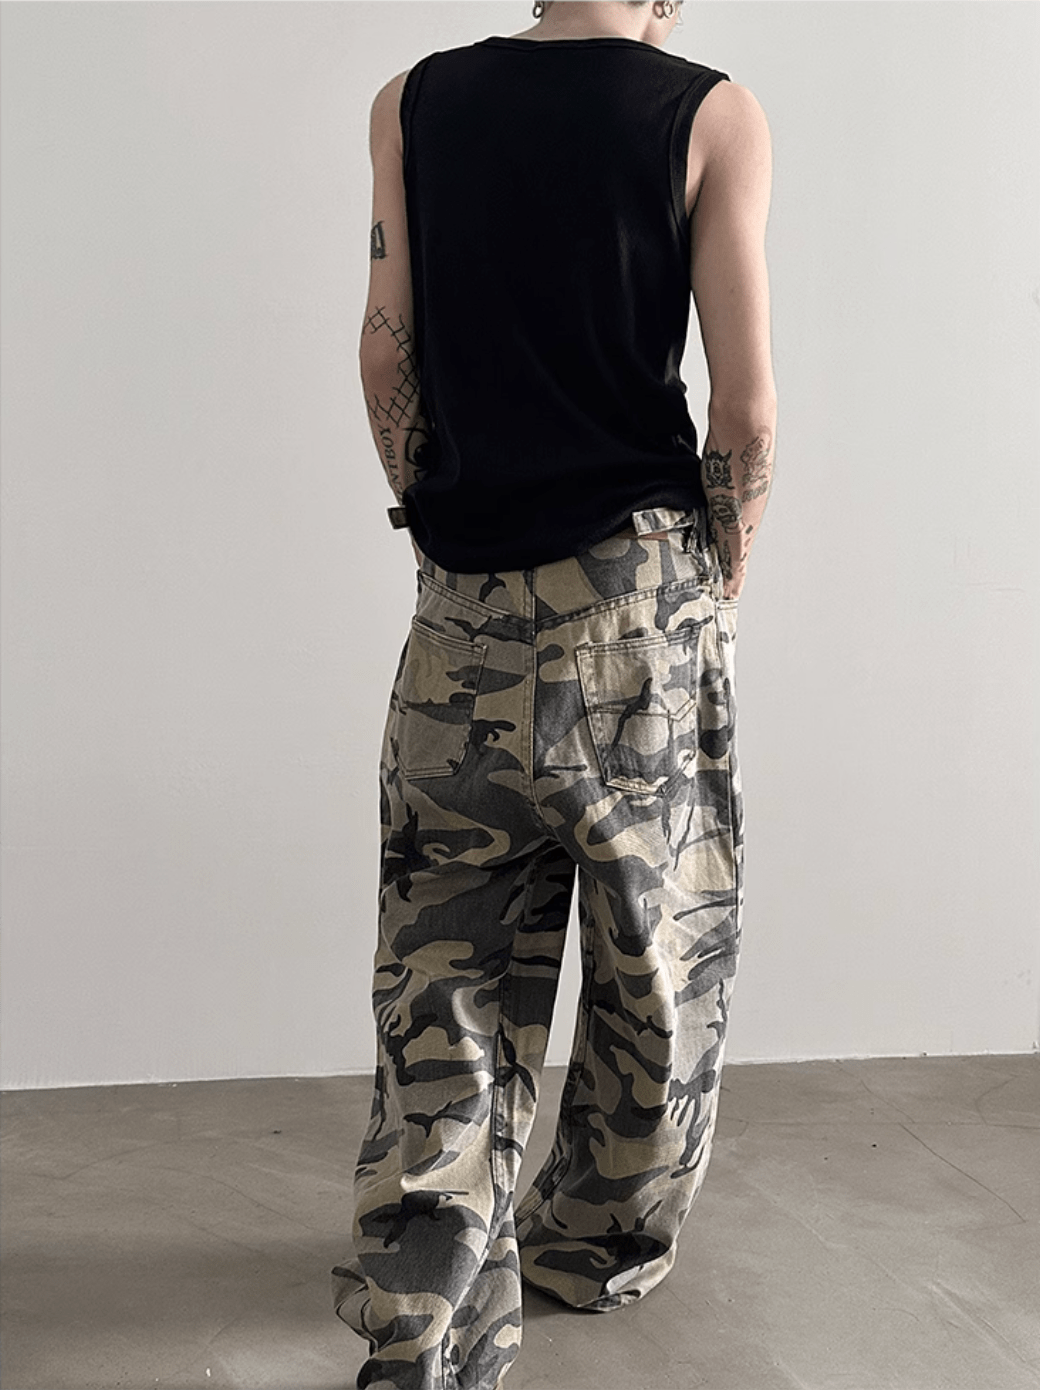 【GENESISBOY】Camouflage Pants na1218